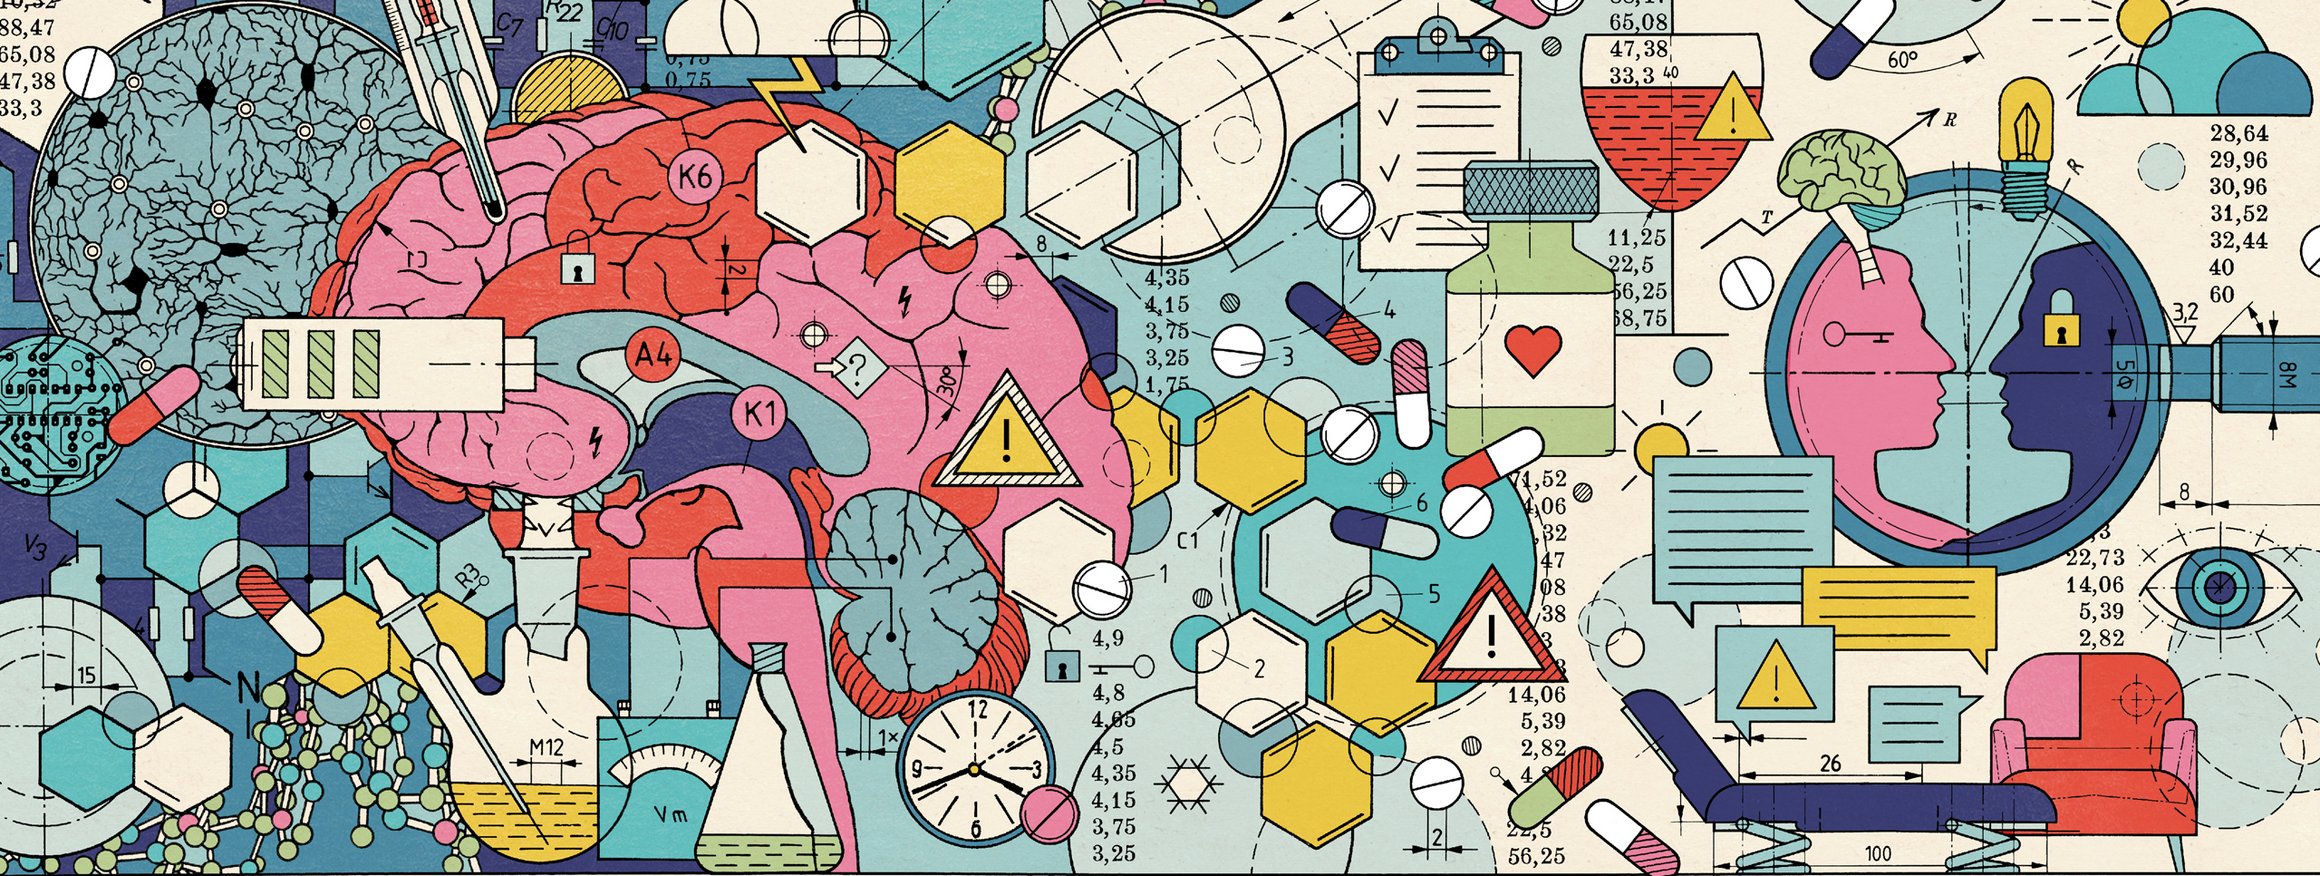 Die Illustration zeigt verschiedene Pillen und Psychopharmaka, die kunterbunt durcheinanderwirbeln, eine Therapeutenliege und Sofa, ein Gehirn und zwei Köpfe